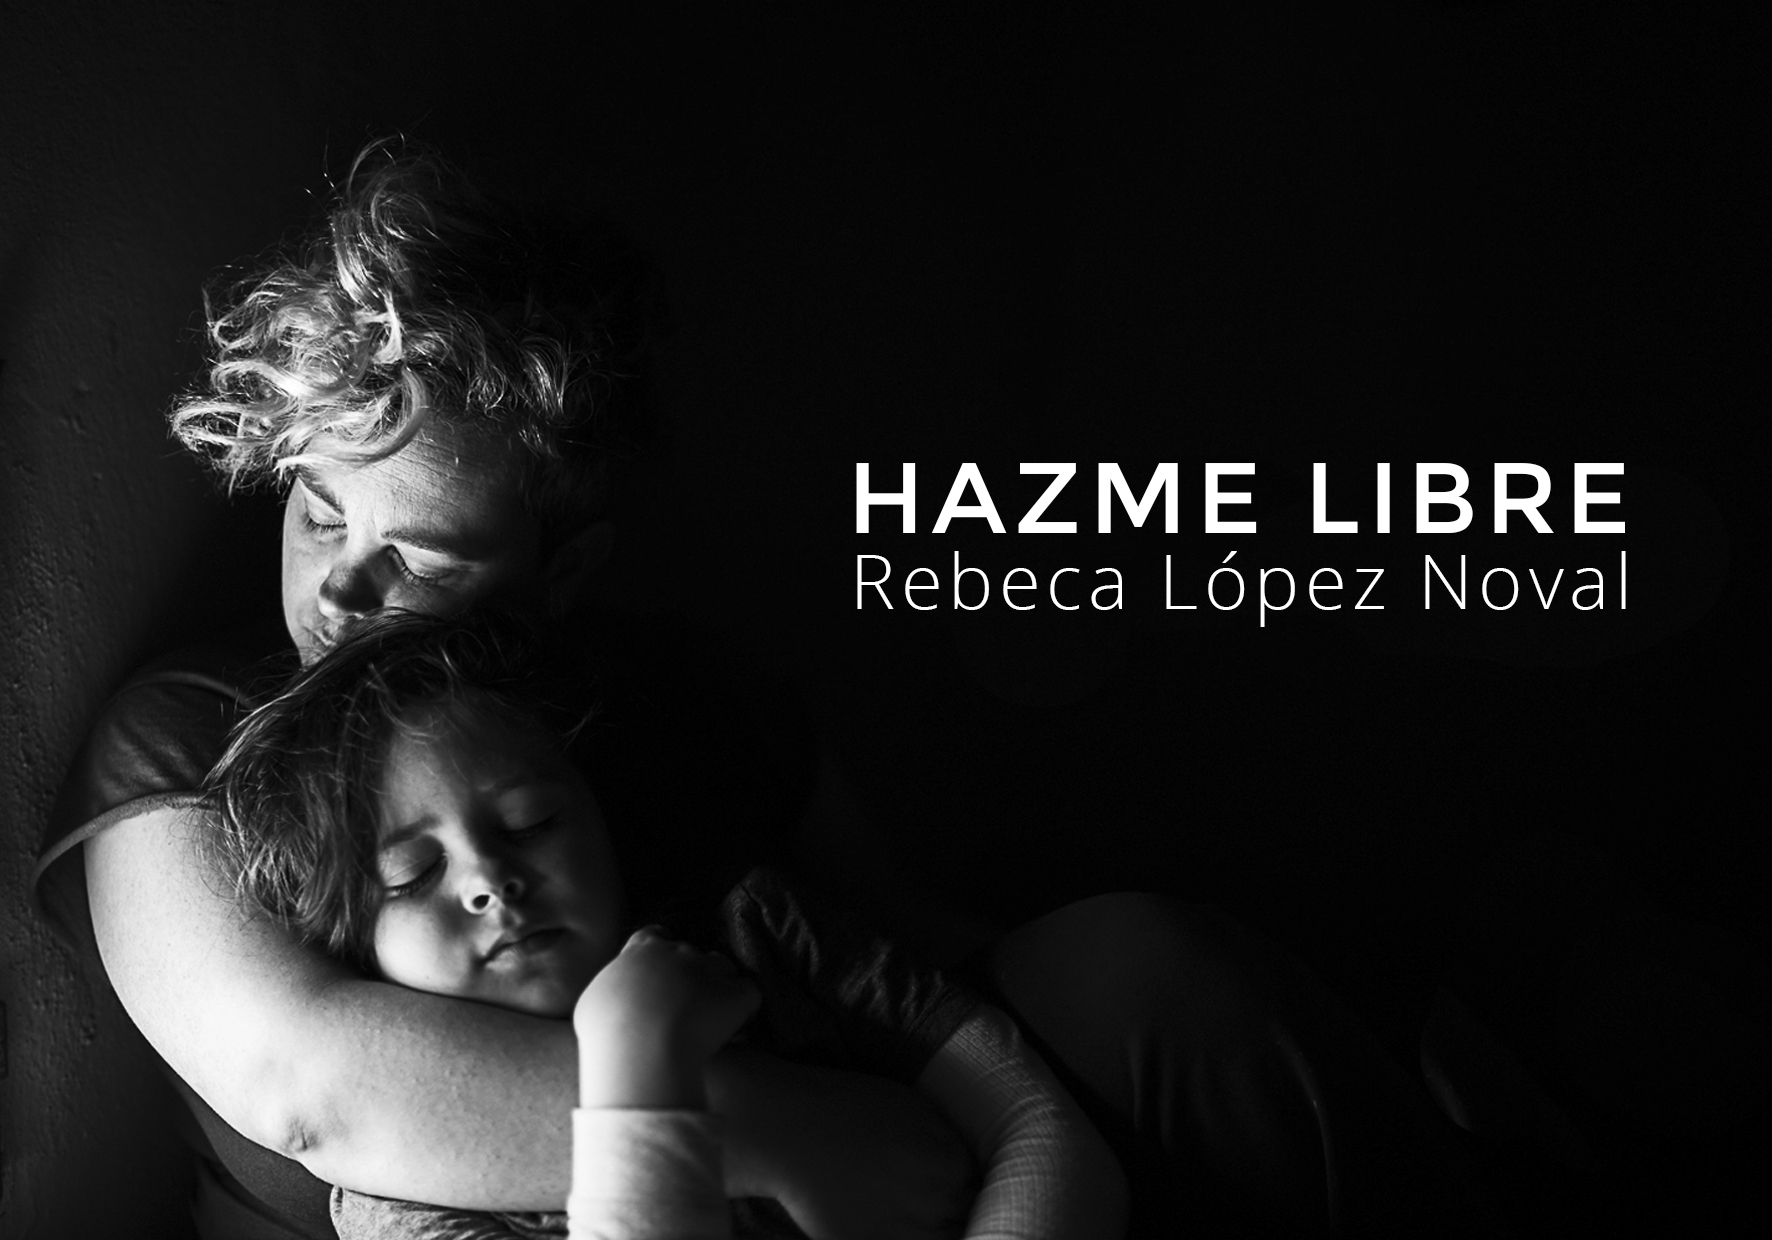 FUNIBER patrocina la exposición “Hazme libre” de Rebeca López Noval en UNEATLANTICO